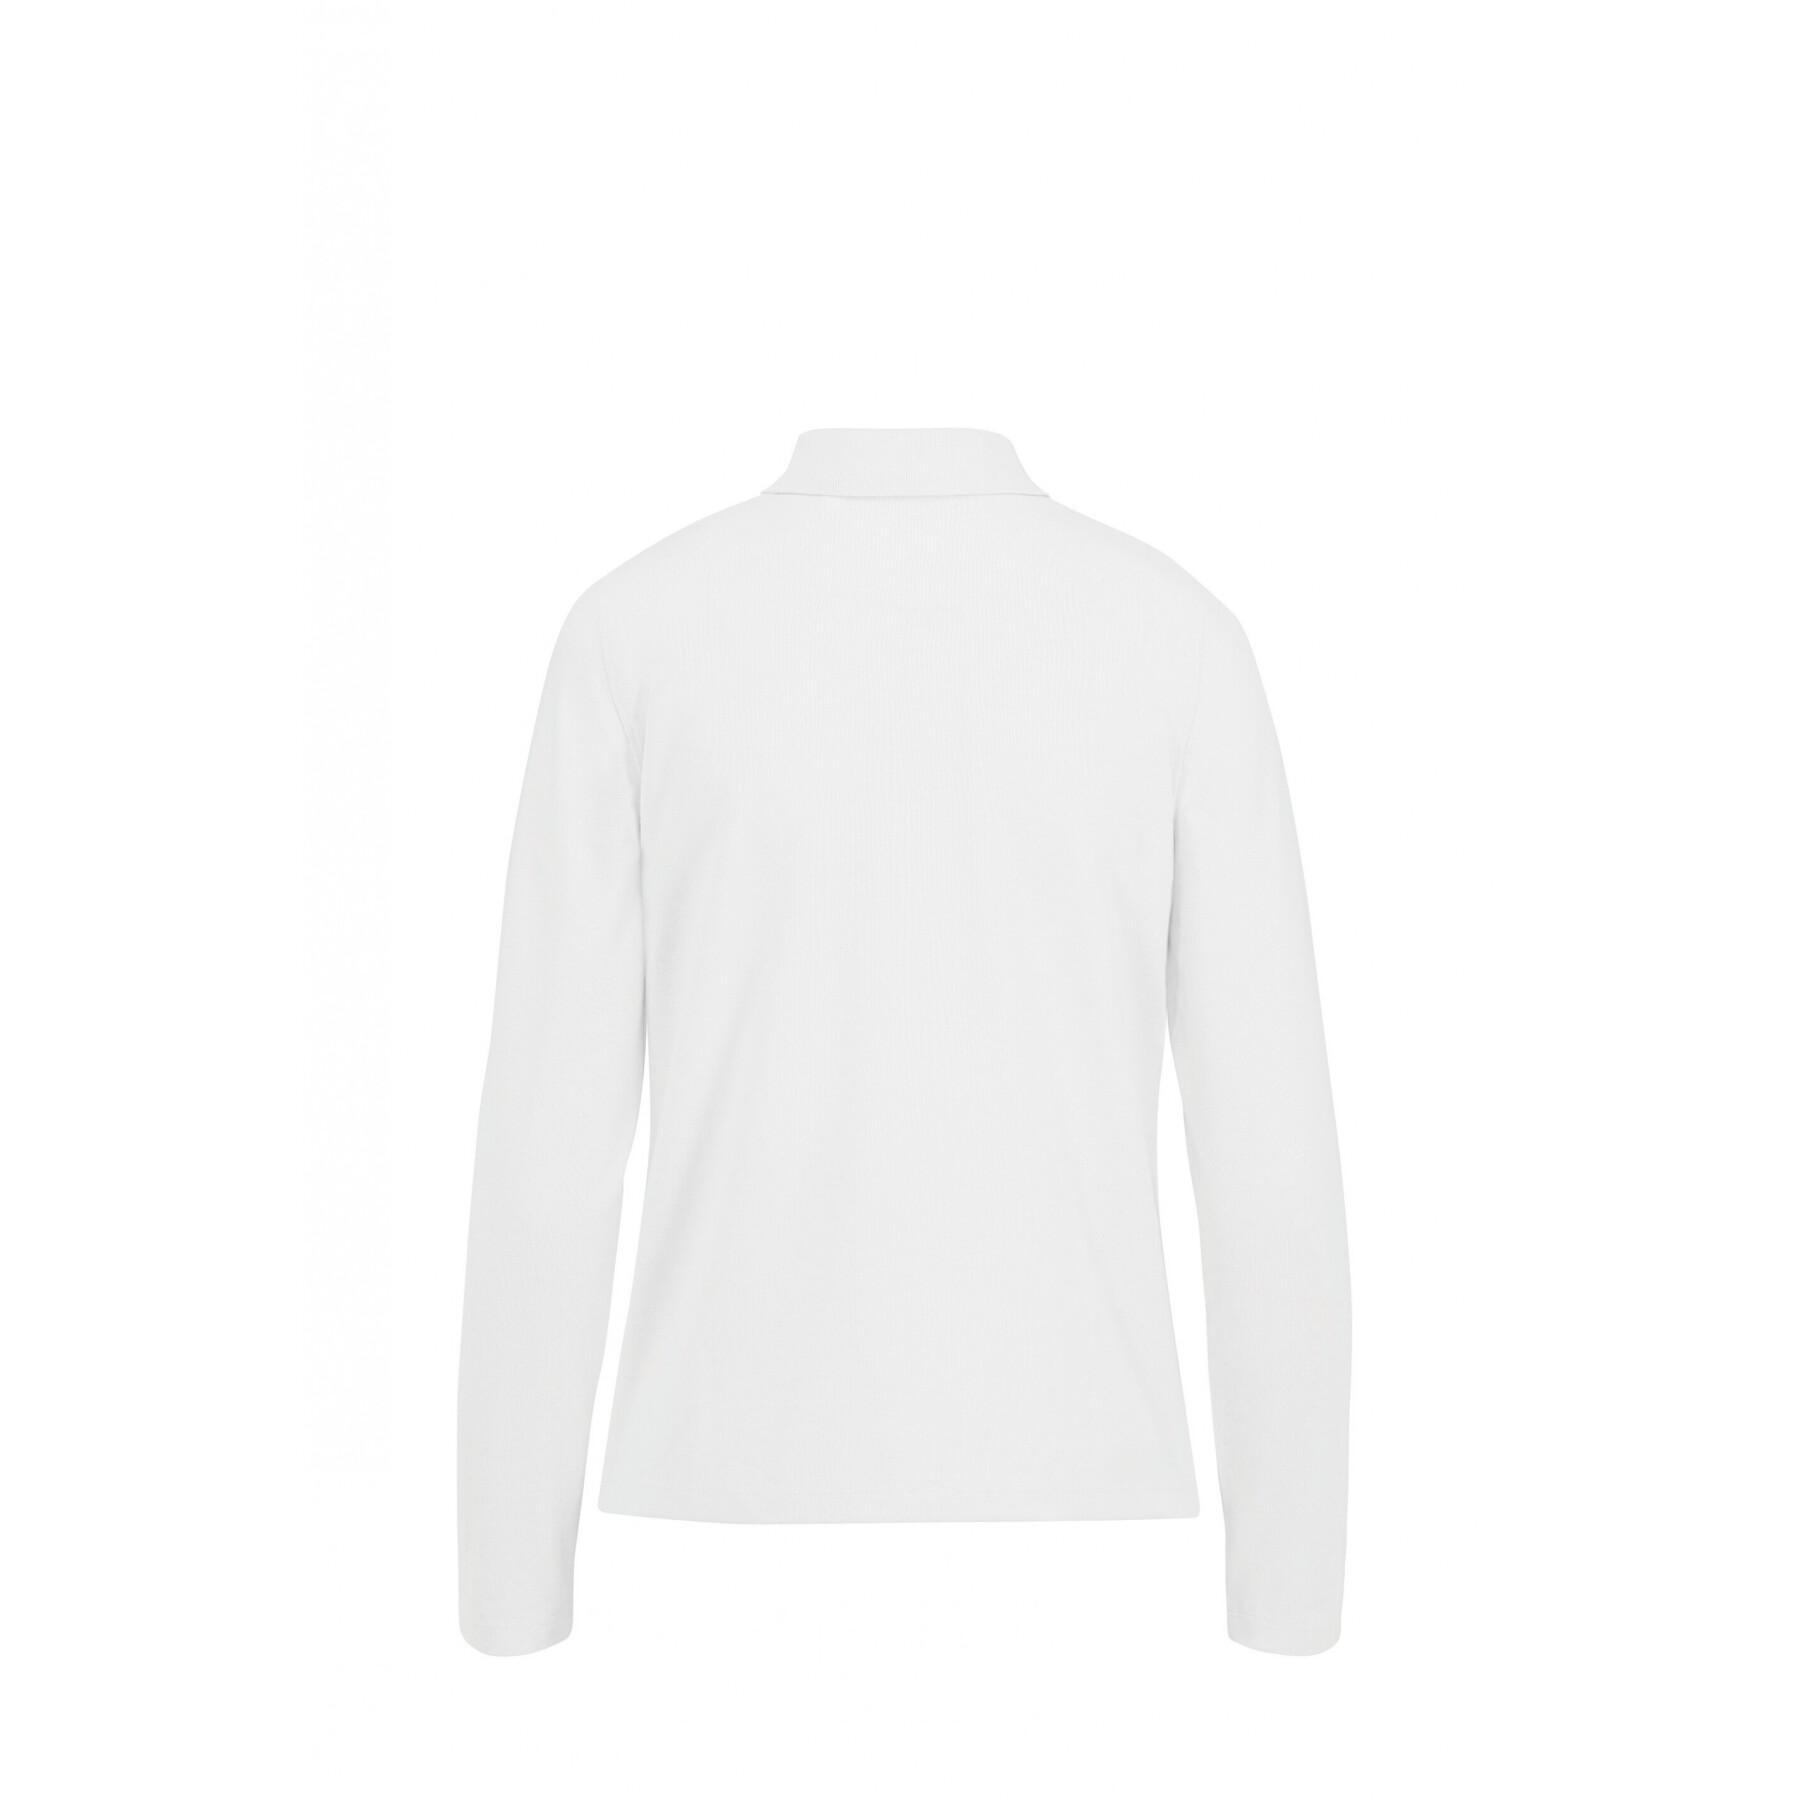 Women's long-sleeved polo shirt B&C 210